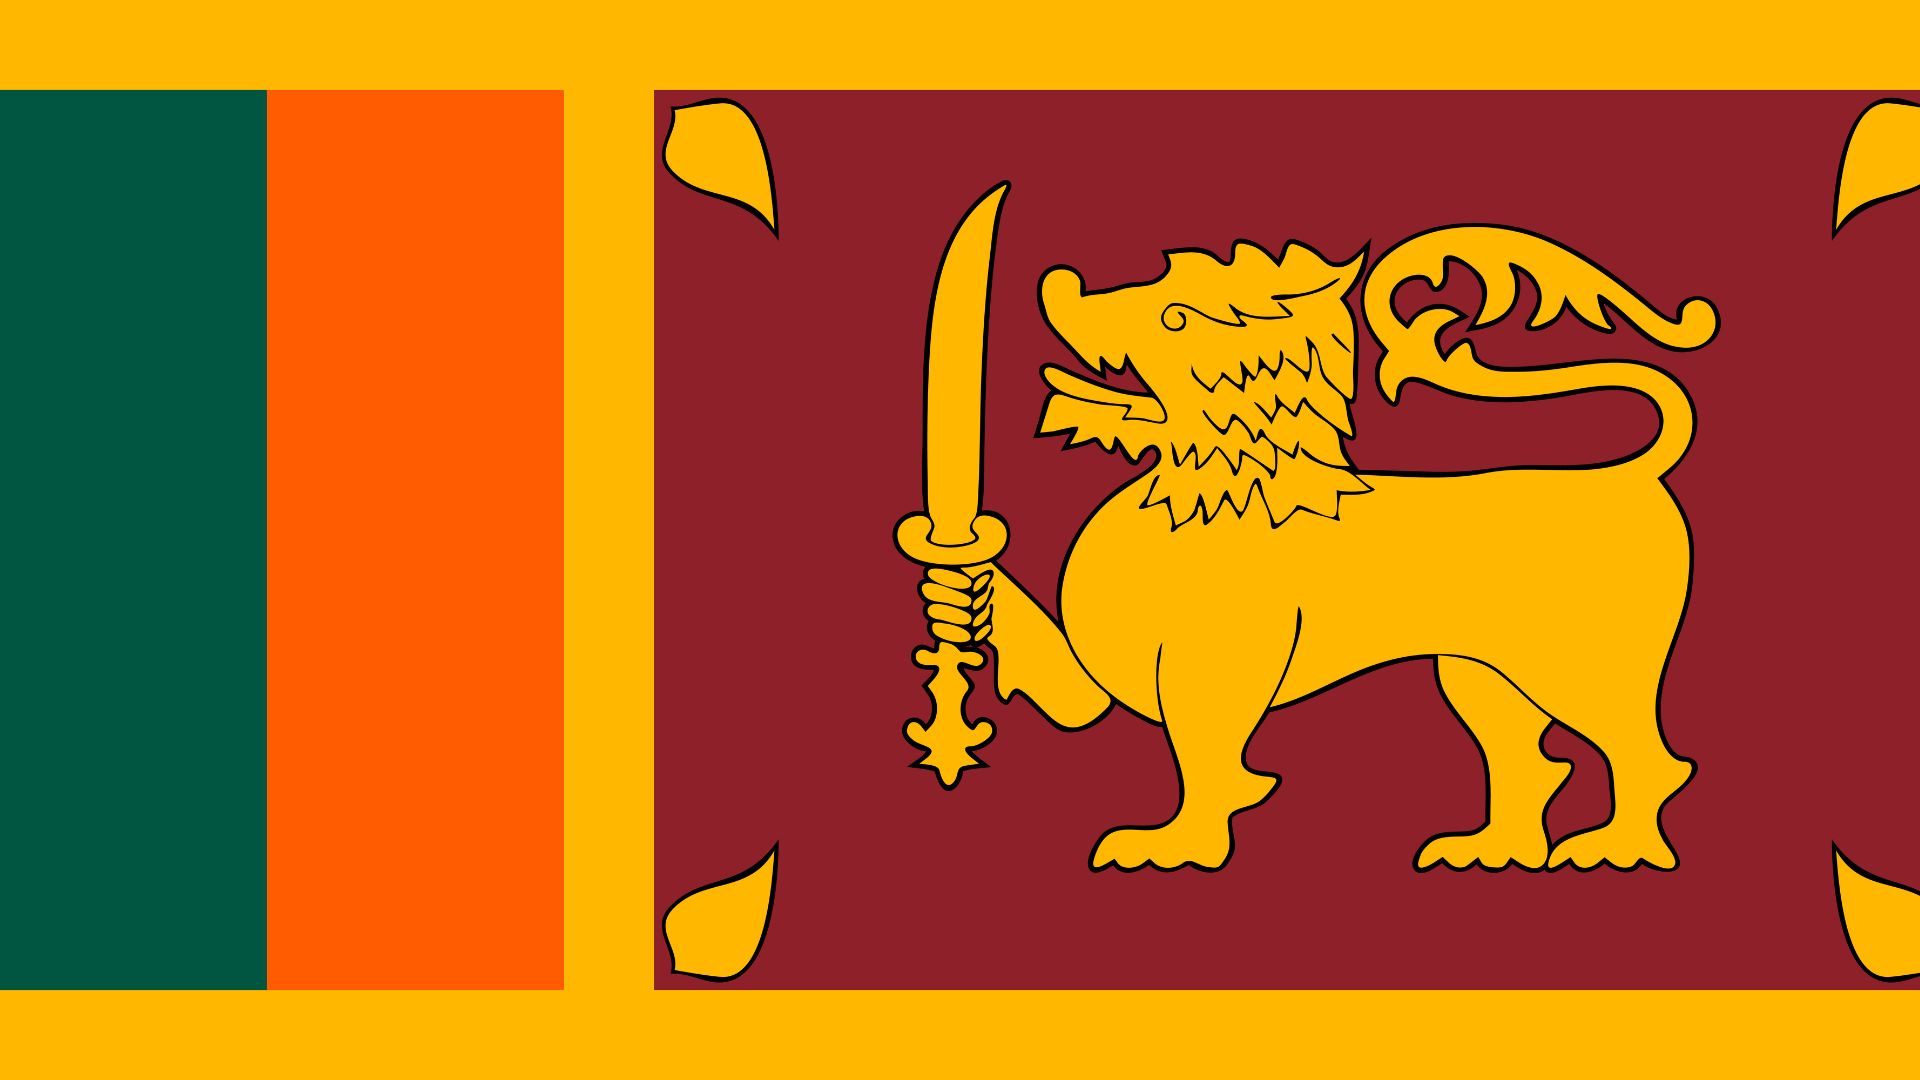 A bandeira do Sri Lanka é composta por uma leão amarelo  em um fundo vermelho-escuro. Ao redor do fundo existe uma moldura amarela e a sua esquerda existem duas listras verticais nas cores laranja e verde.